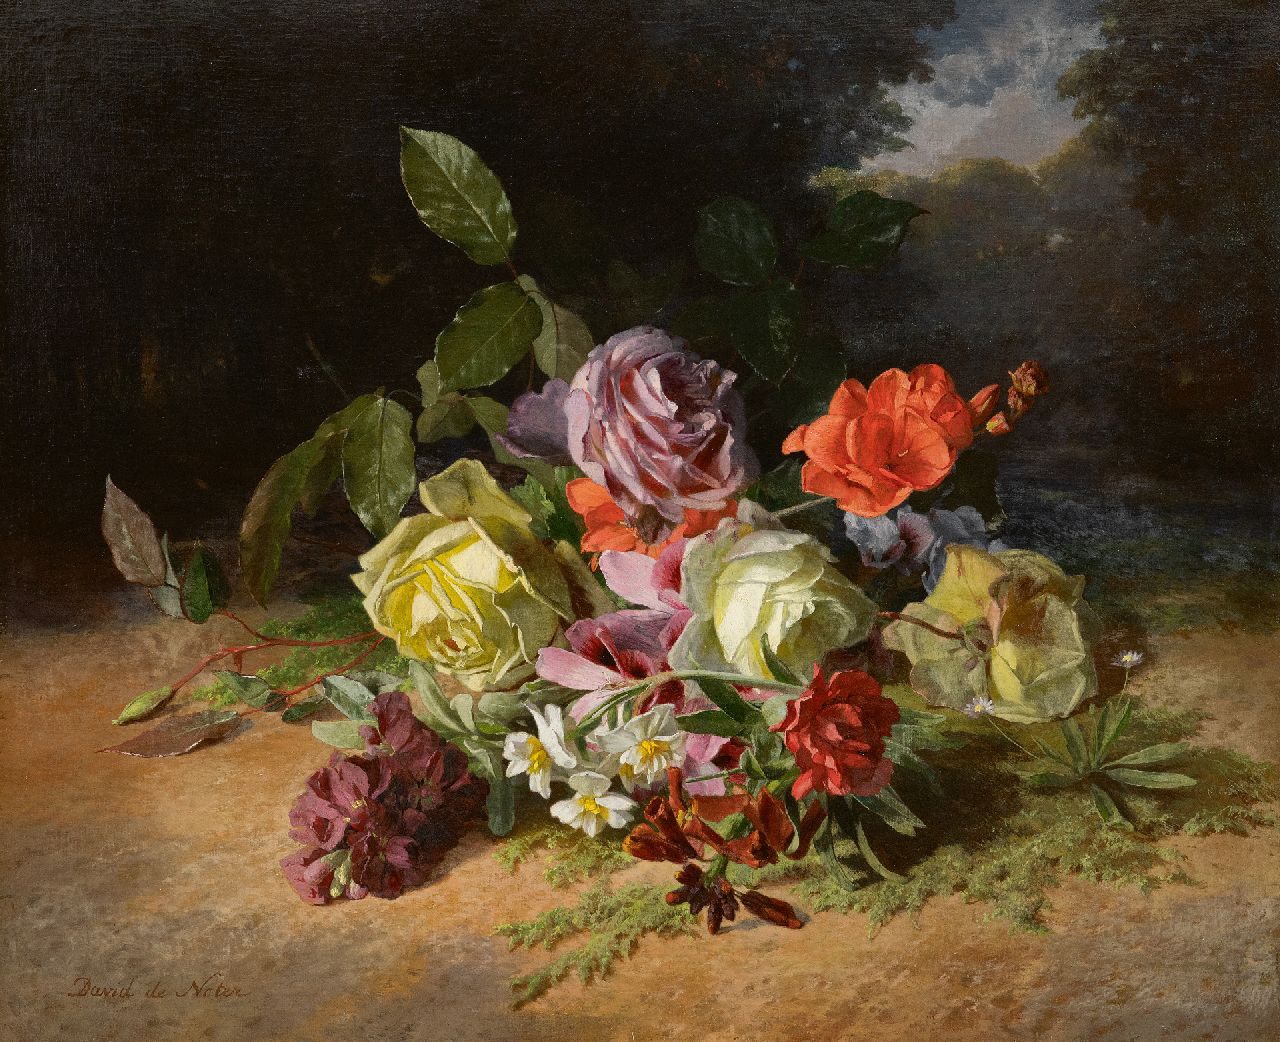 Noter D.E.J. de | 'David' Emile Joseph de Noter | Schilderijen te koop aangeboden | Rozenboeket en zomerbloemen op de bosgrond, olieverf op doek 46,3 x 55,1 cm, gesigneerd linksonder en op het spieraam